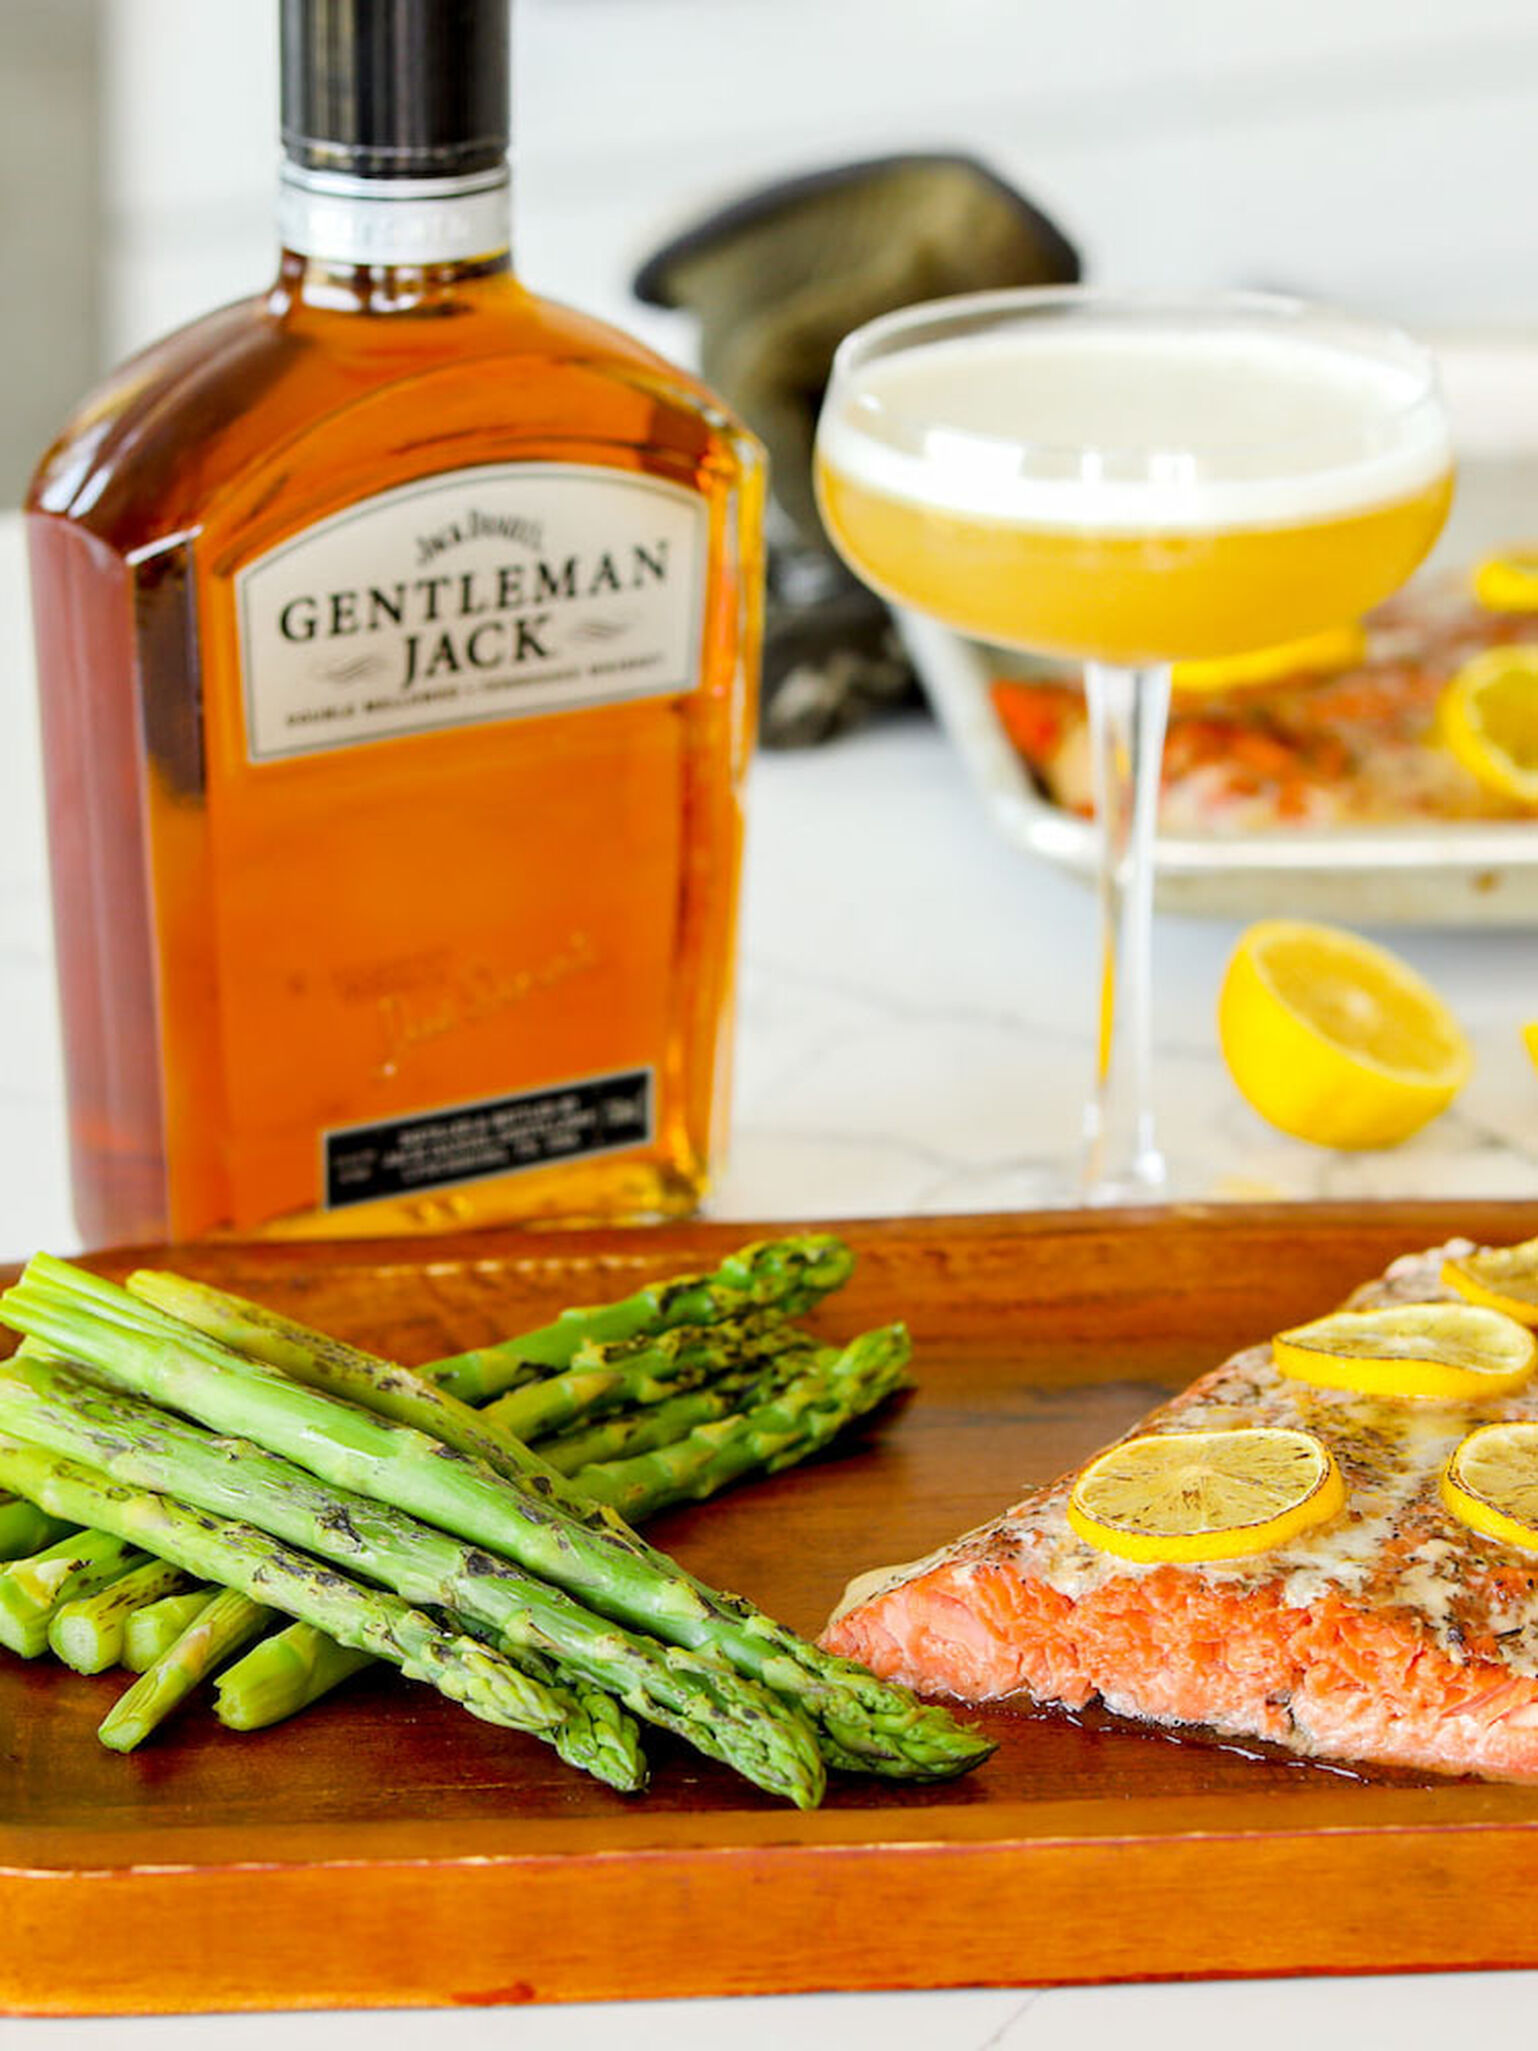 Gentleman Jack's bottle with salmon